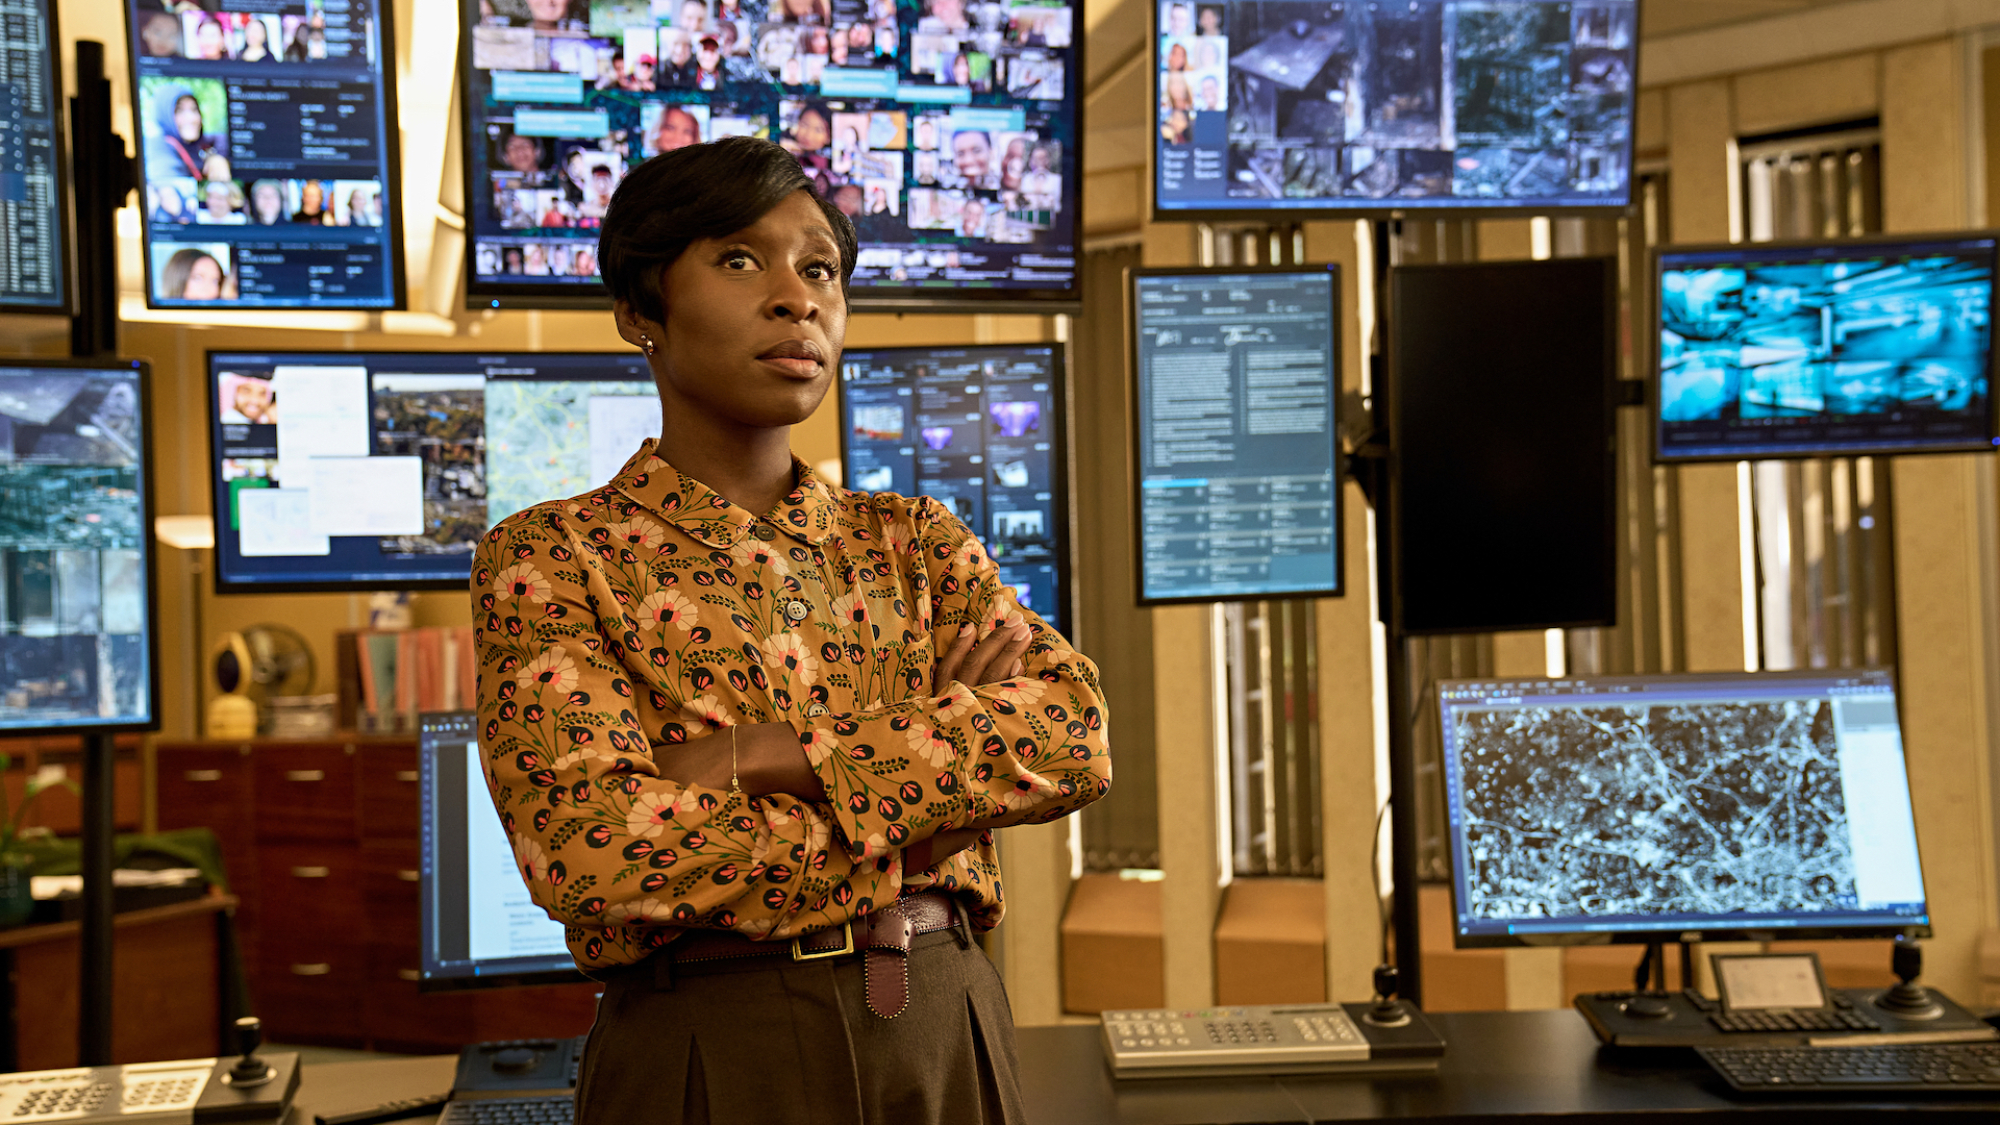 Une femme portant une chemise à motifs se tient dans une salle de surveillance de la police avec environ 10 écrans derrière elle montrant diverses images et informations de suivi.